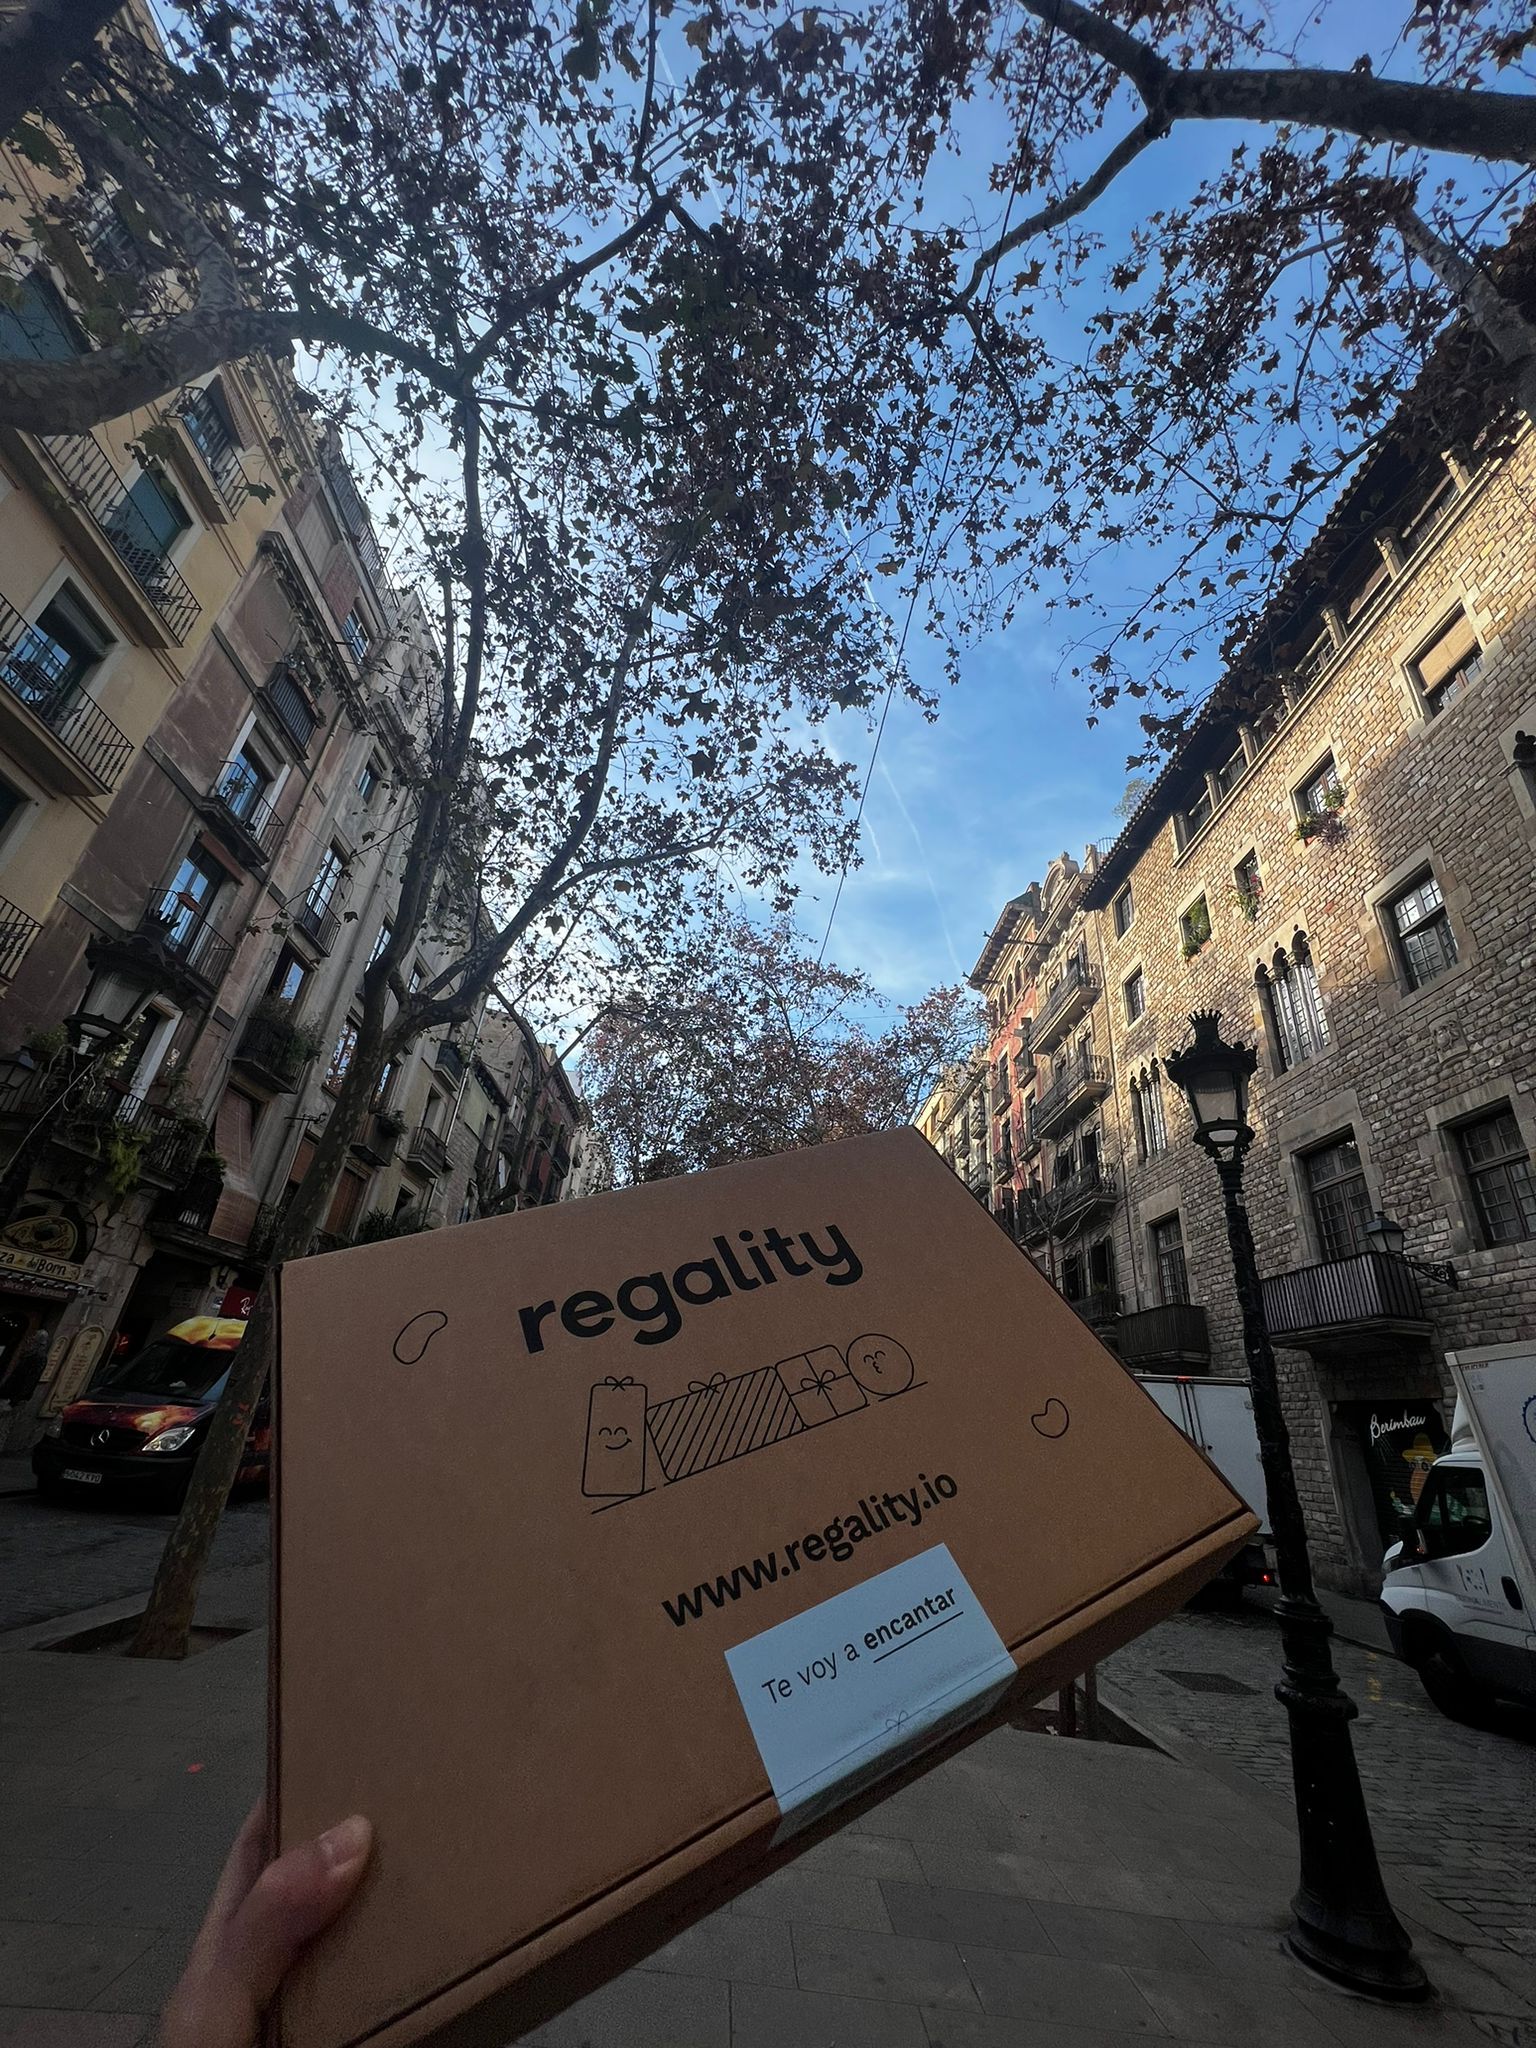 ¿No sabes qué regalar? Regality con un algoritmo de IA lo hace por ti - noticias-barcelona-hoy